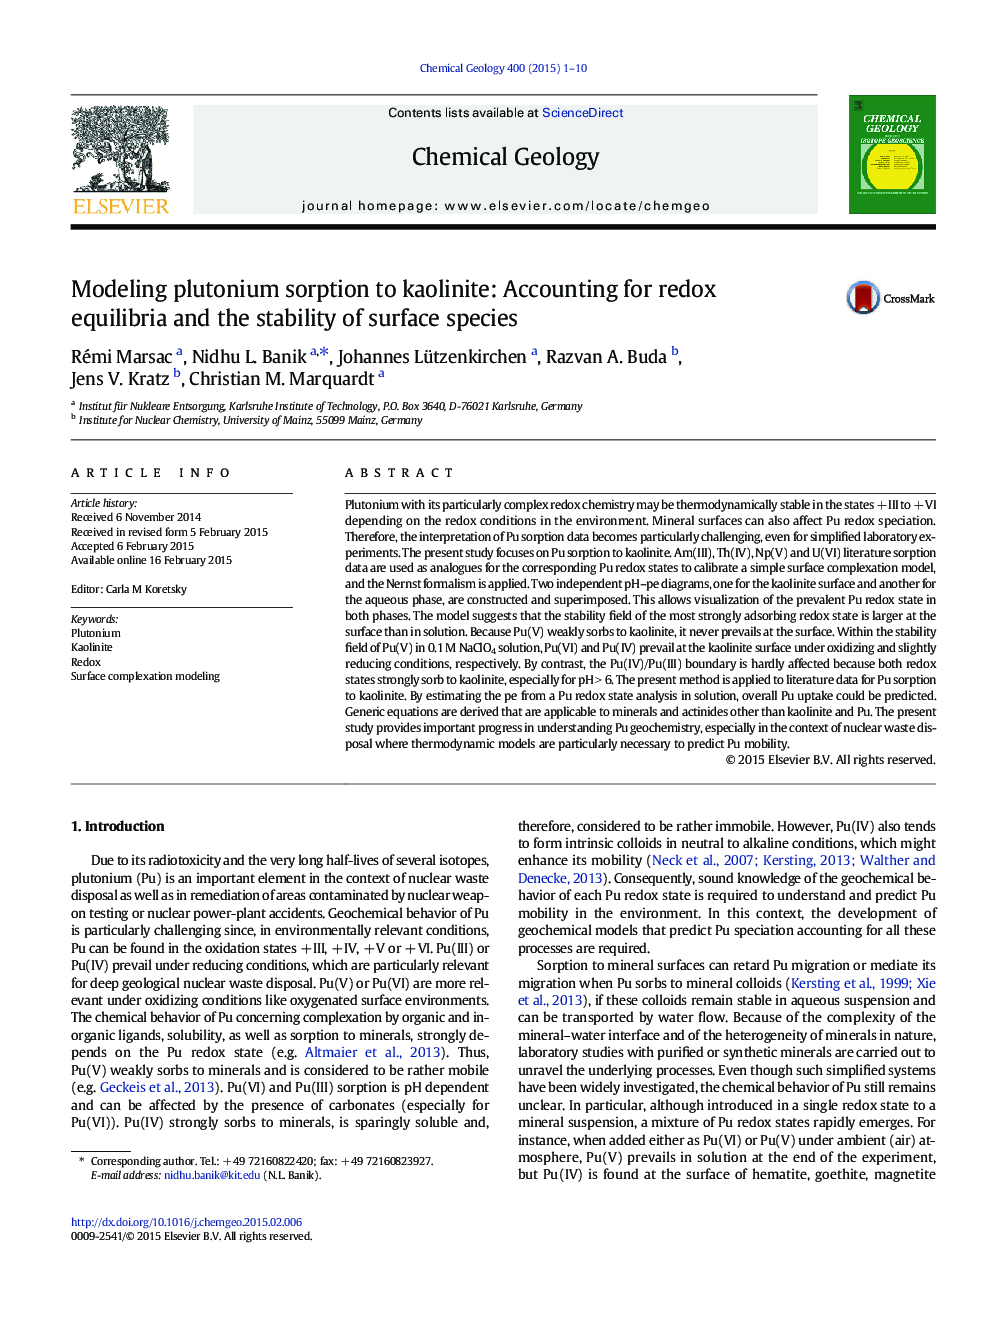 مدل سازی جذب پلوتونیوم به کائولینیت: حسابداری برای تعادل بازدارندگی و پایداری گونه های سطحی 